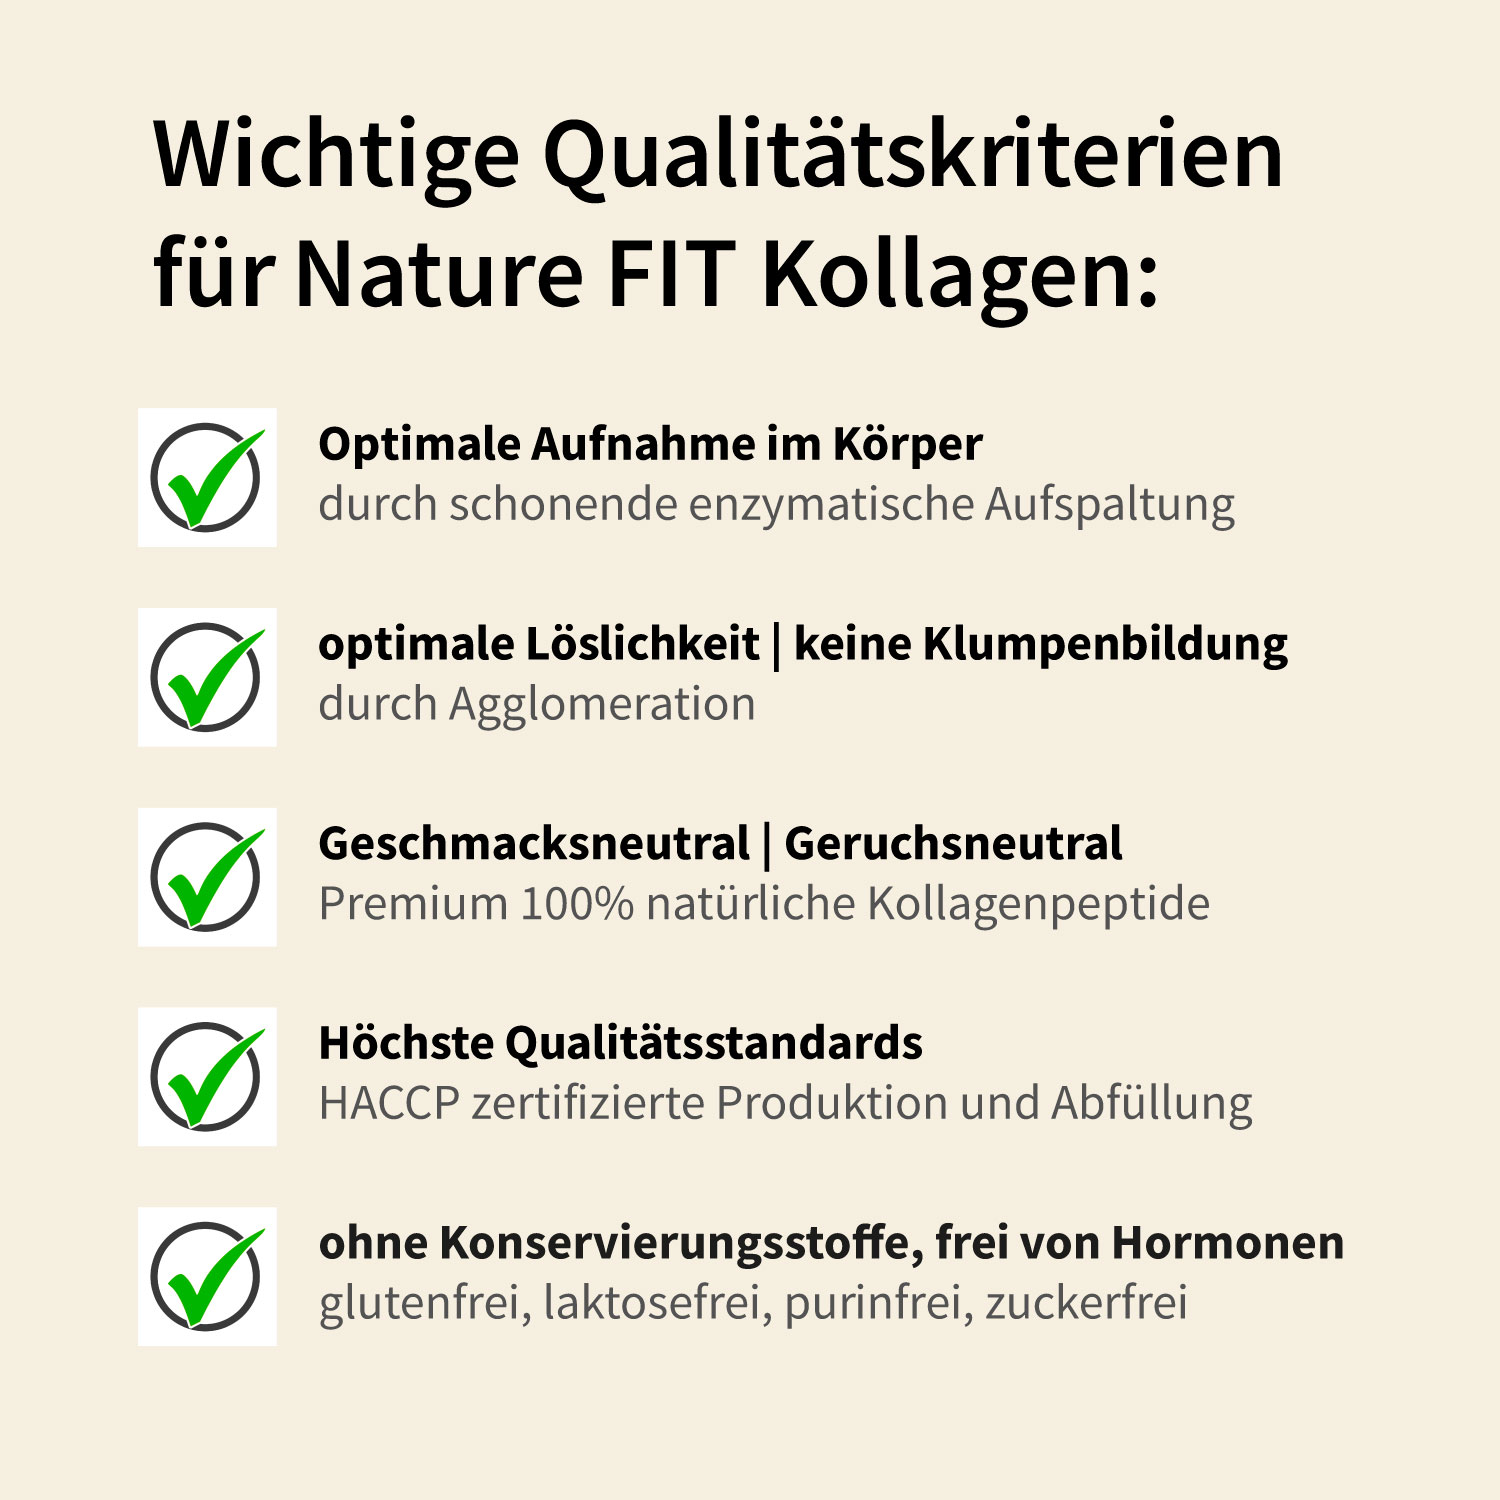 NF90901_Bild3_Kollagen-Qualitätskriterien